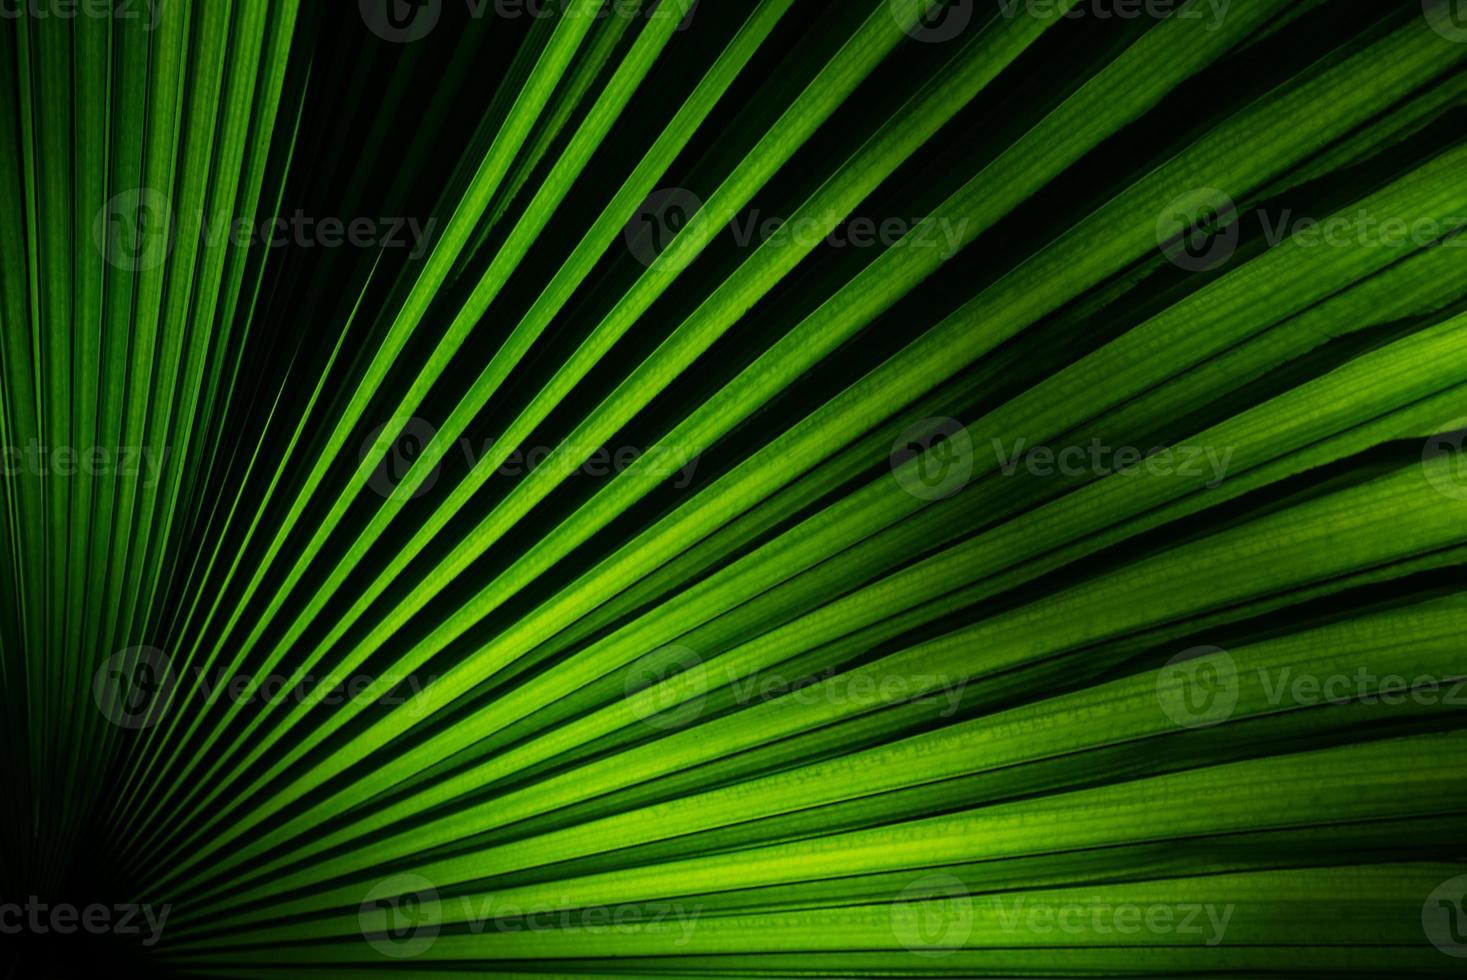 närbild bild av gröna blad av växten foto